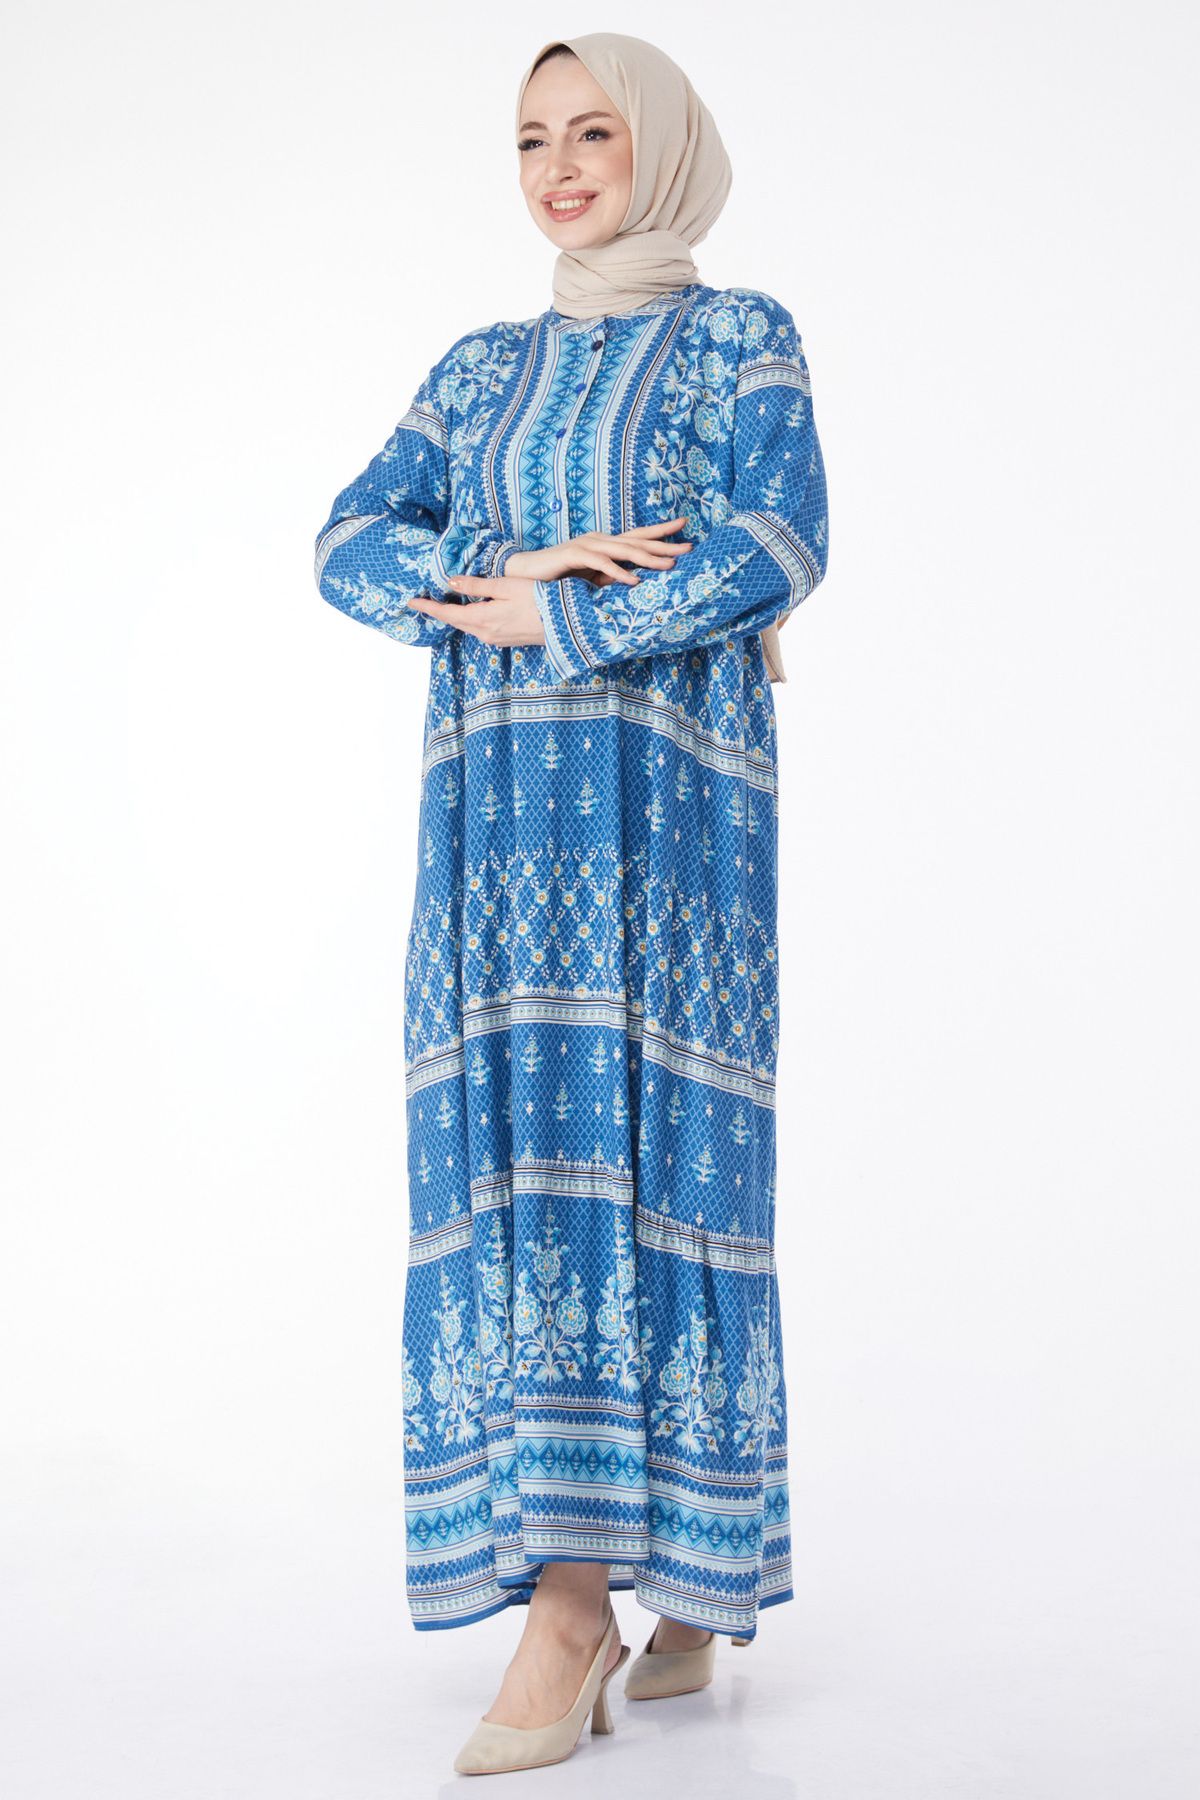 TOFİSA Düz Hakim Yaka Kadın Mavi Desenli Renkli Elbise - 24995